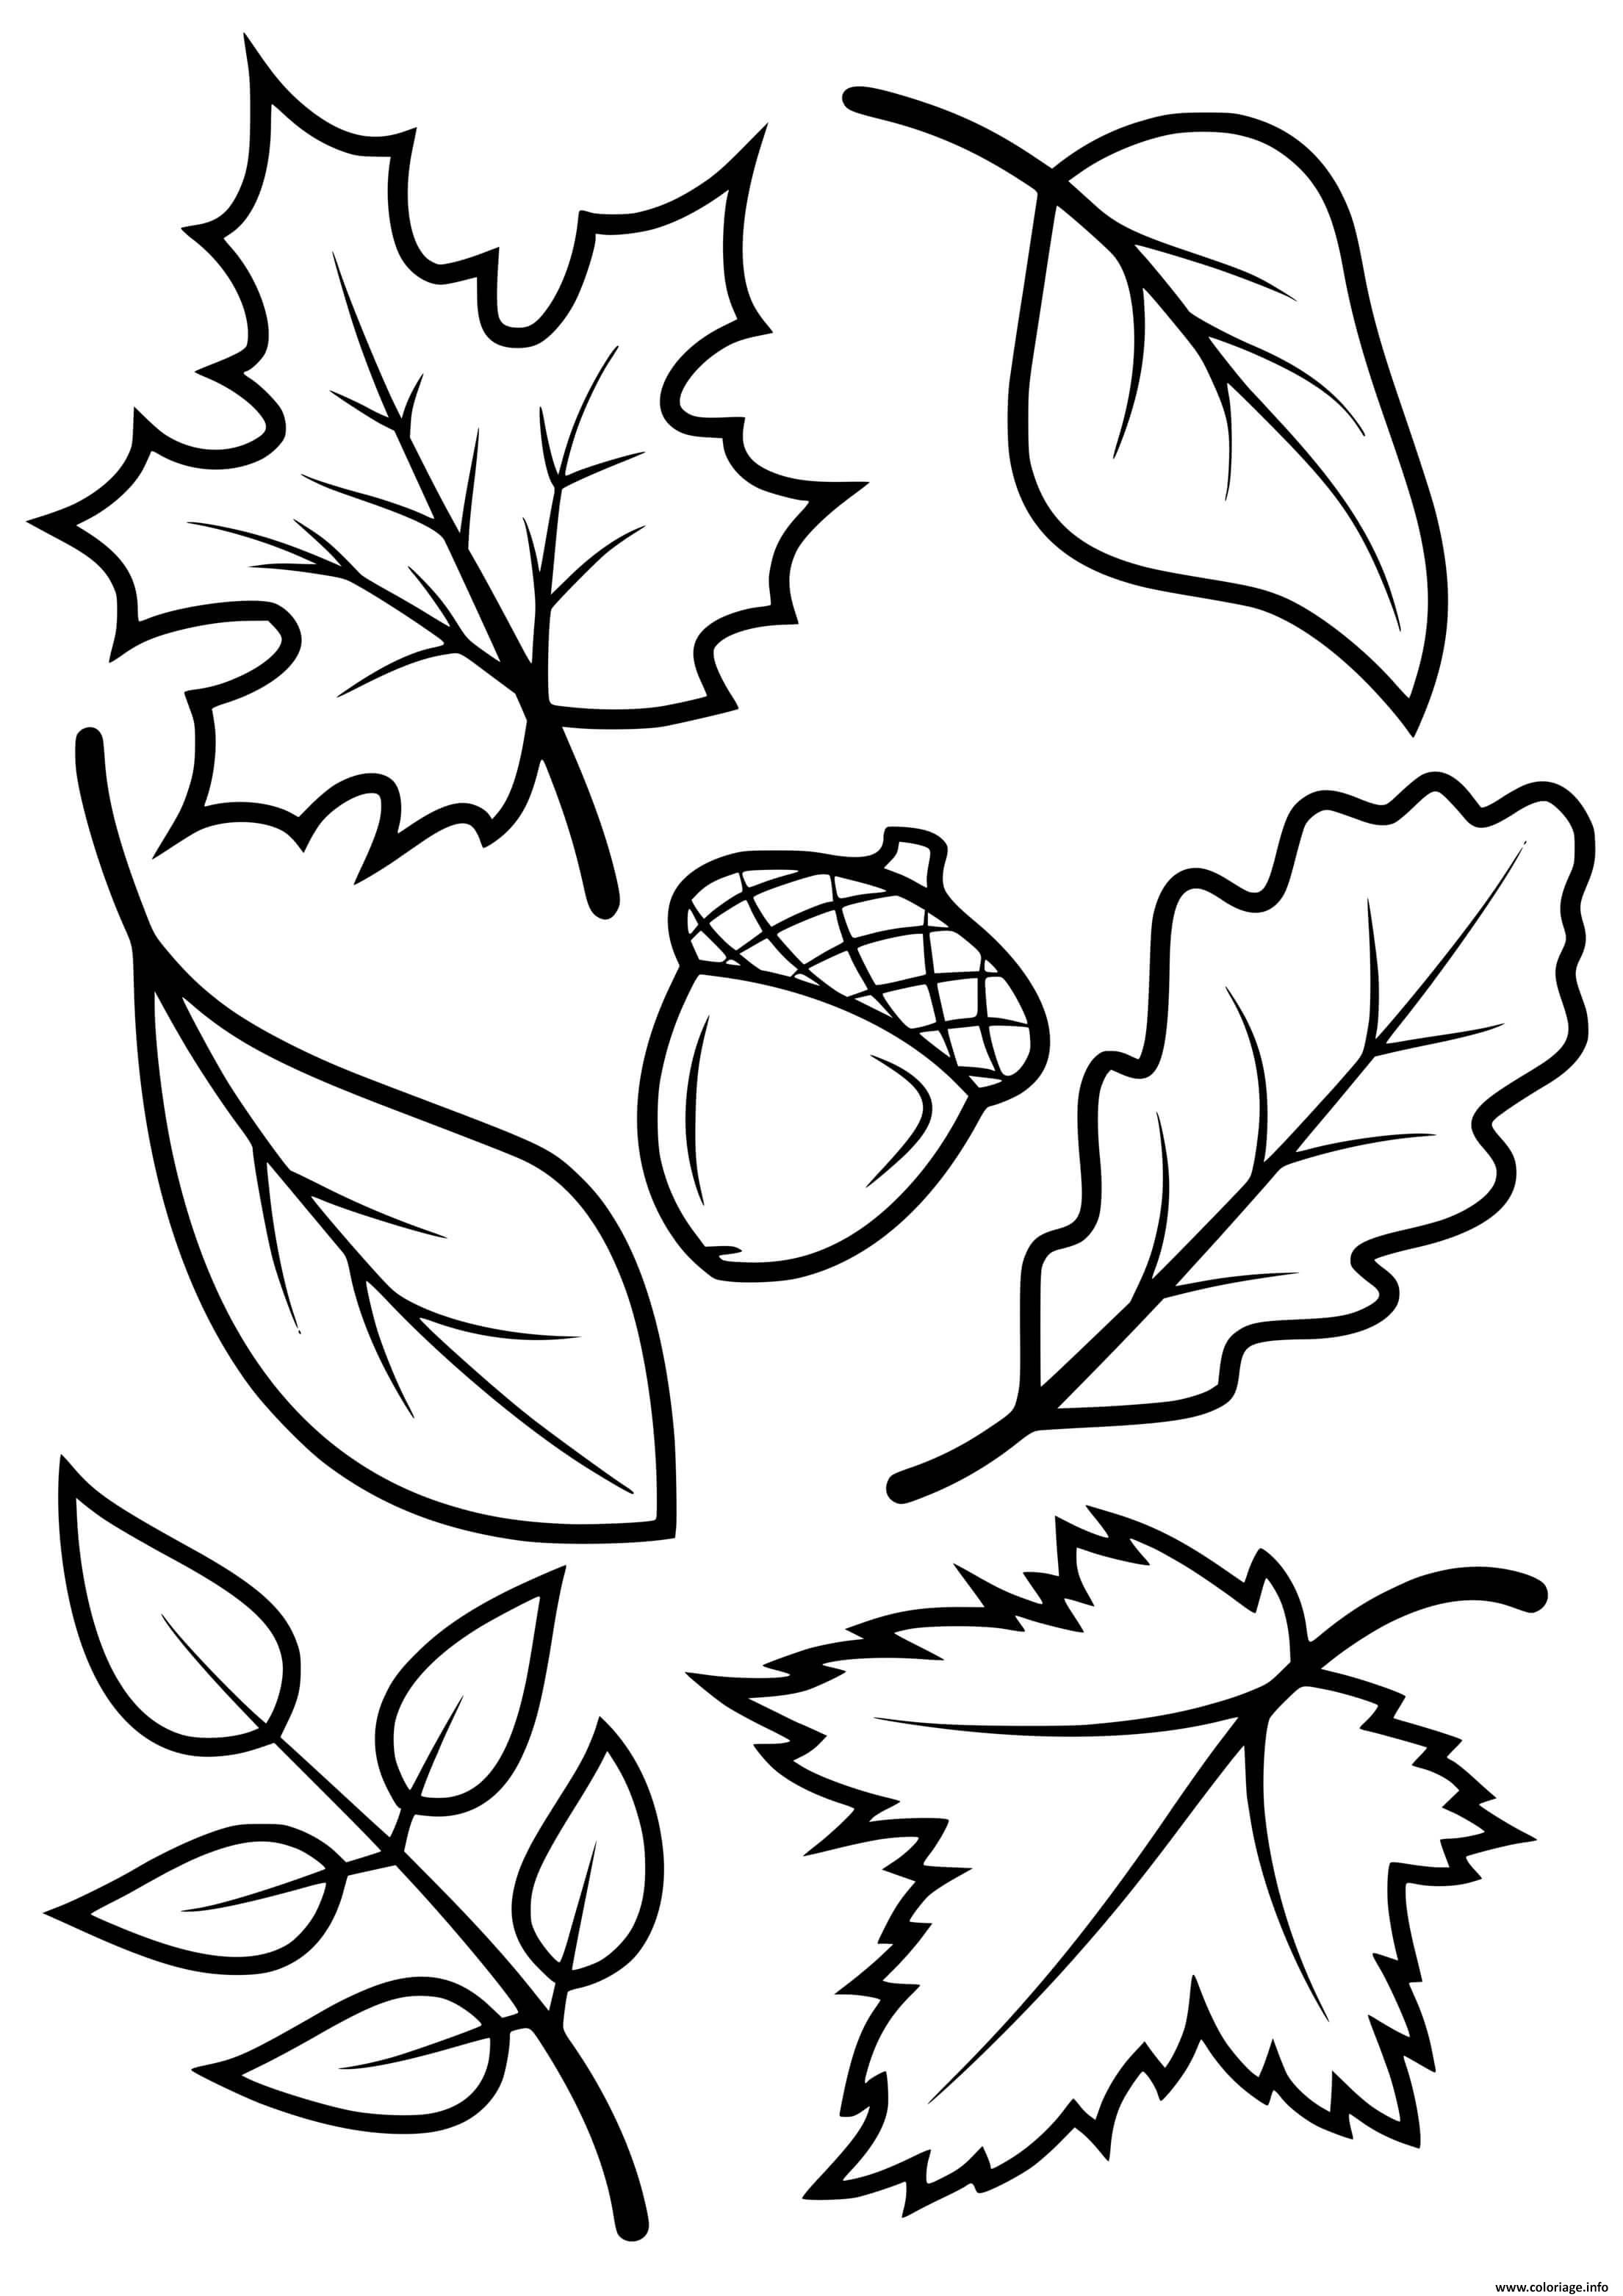 Dessin feuilles automne arbres erable hetre chene Coloriage Gratuit à Imprimer